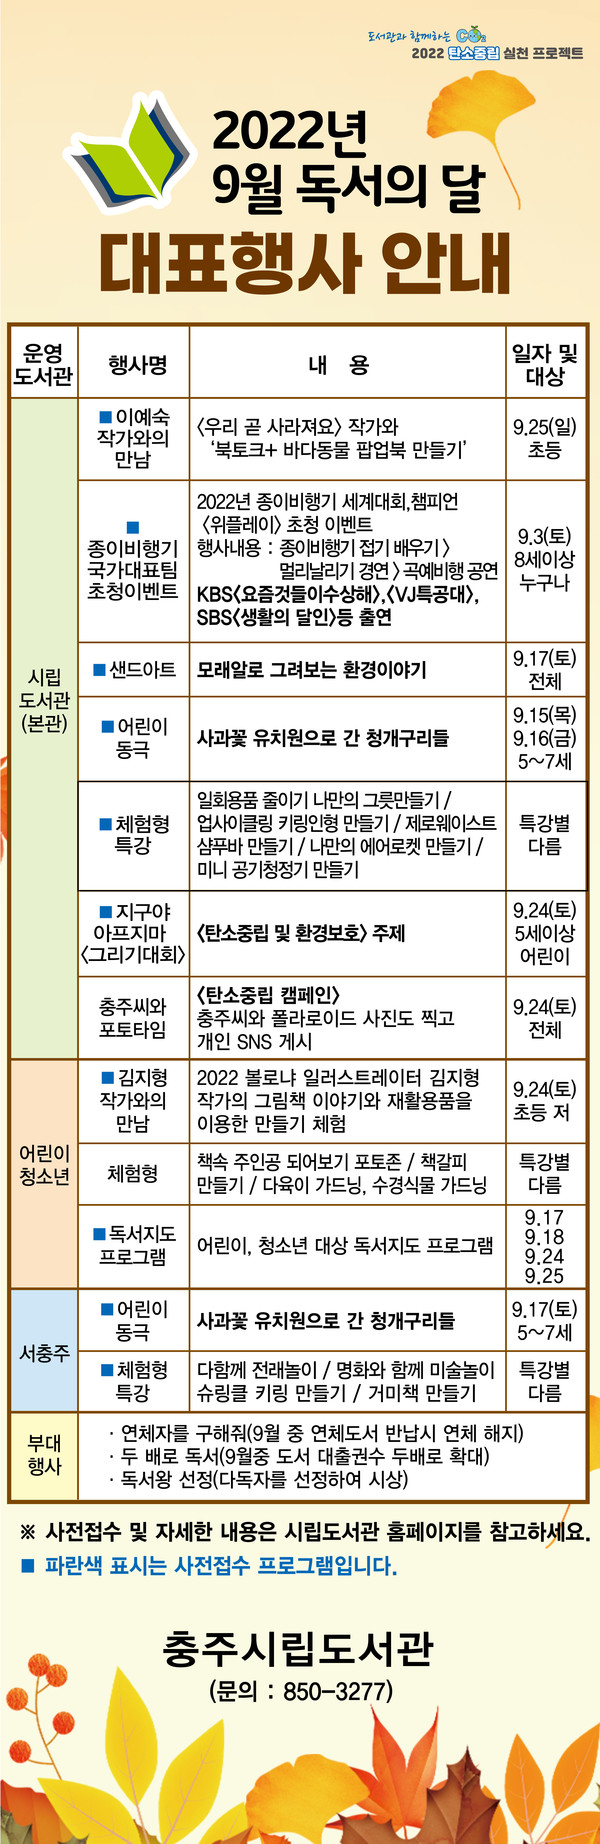 충주시립도서관 9월 문화 행사 홍보물. (충주시 제공)